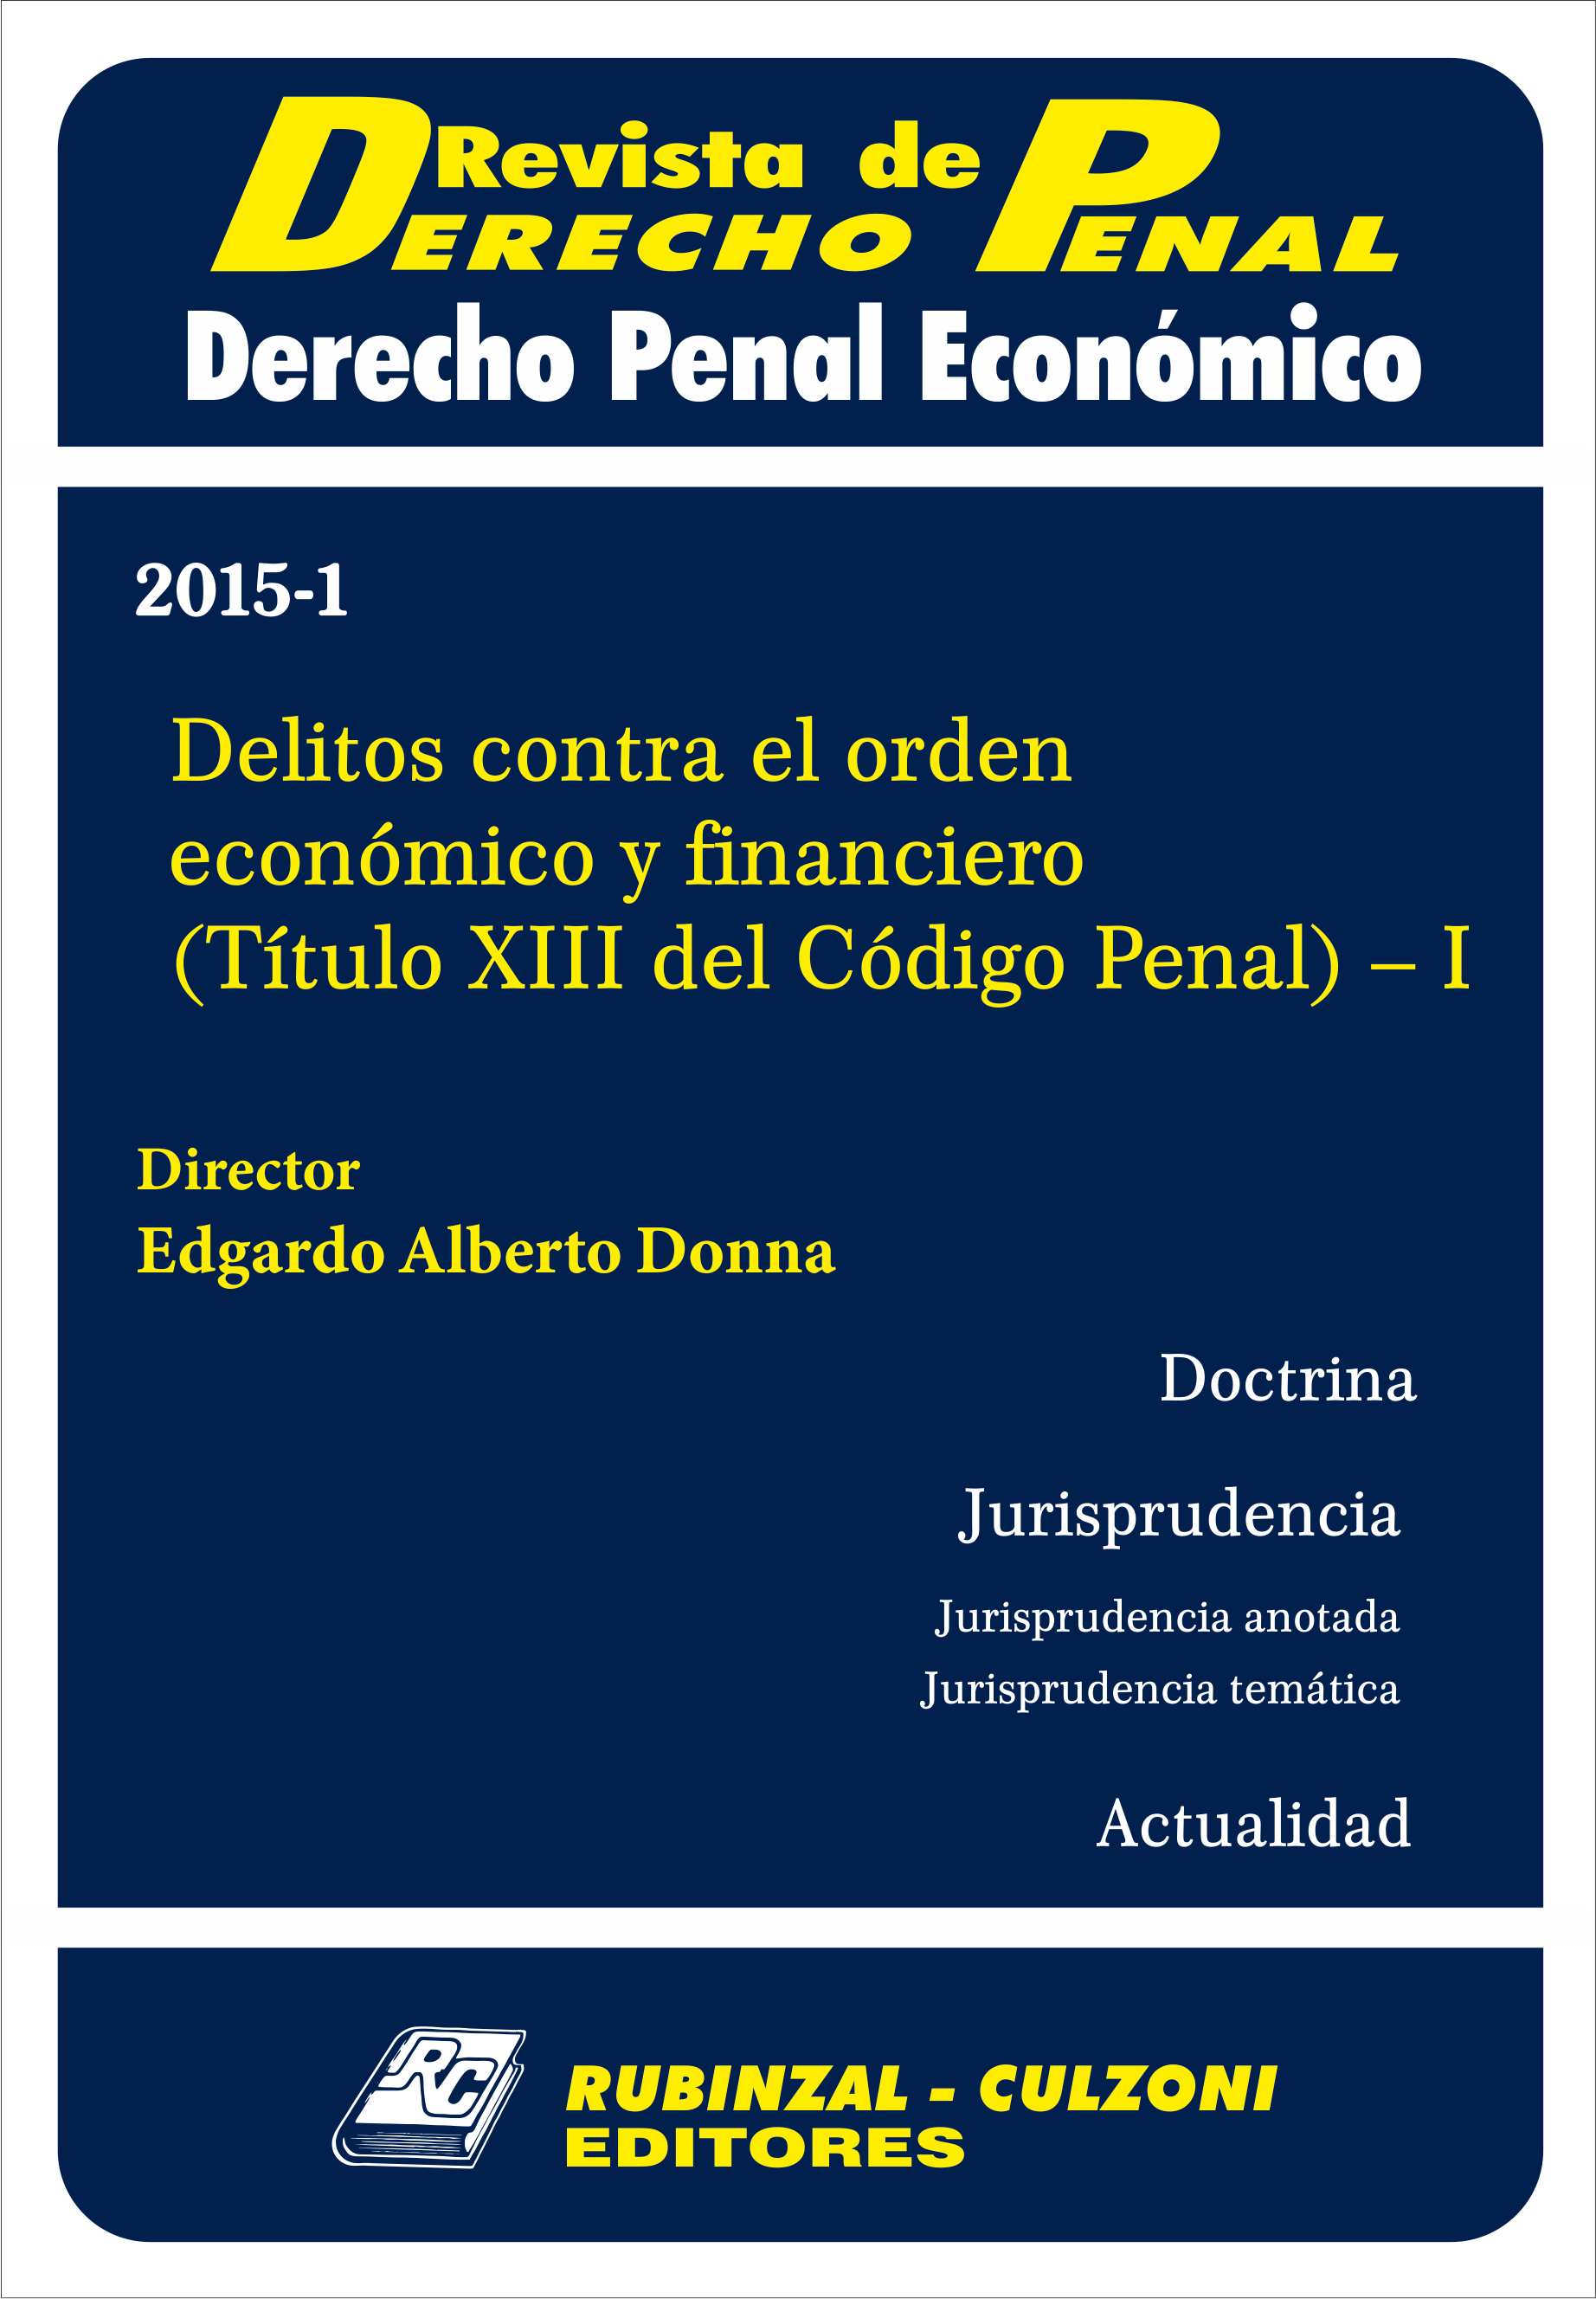 Delitos contra el orden económico y financiero (Título XIII del Código Penal) - I [2015-1]